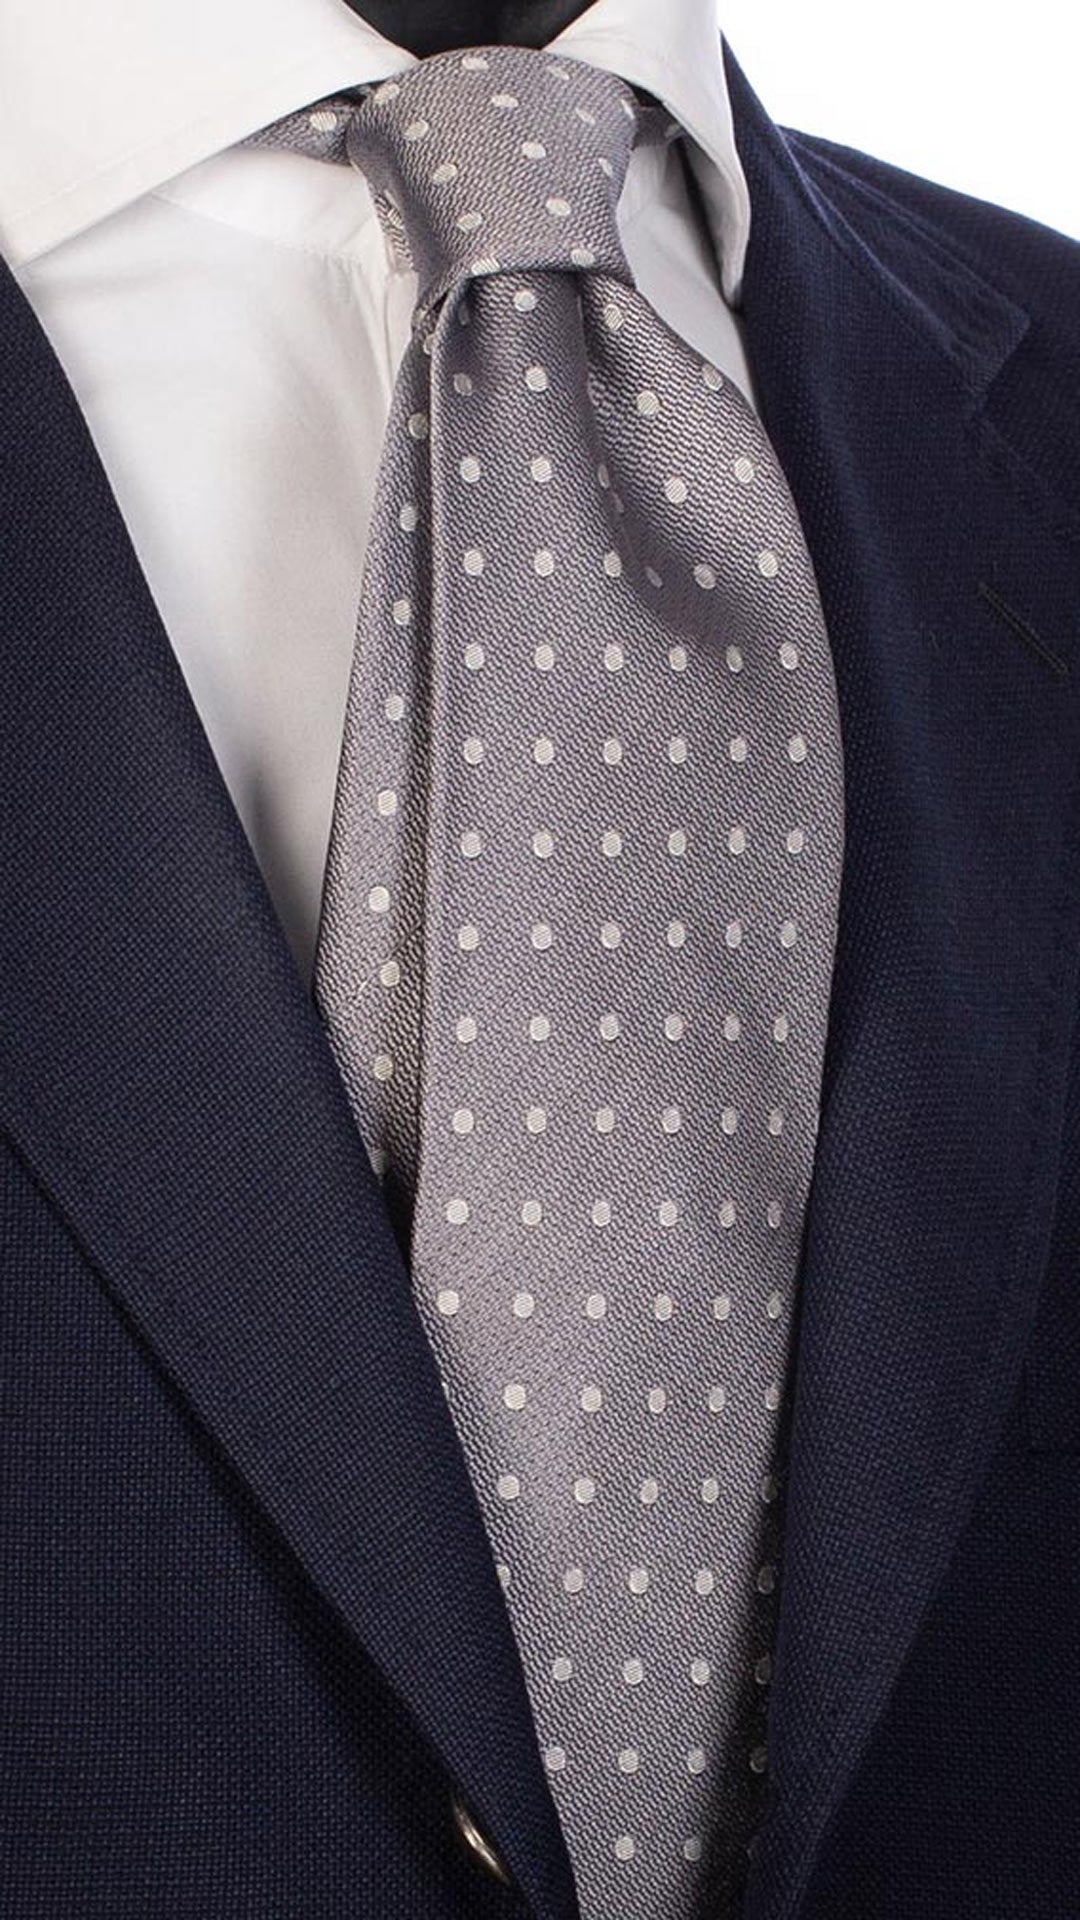 Cravatta da Cerimonia di Seta Grigia a Pois Grigio Chiaro CY2484 Made in Italy Graffeo Cravatte